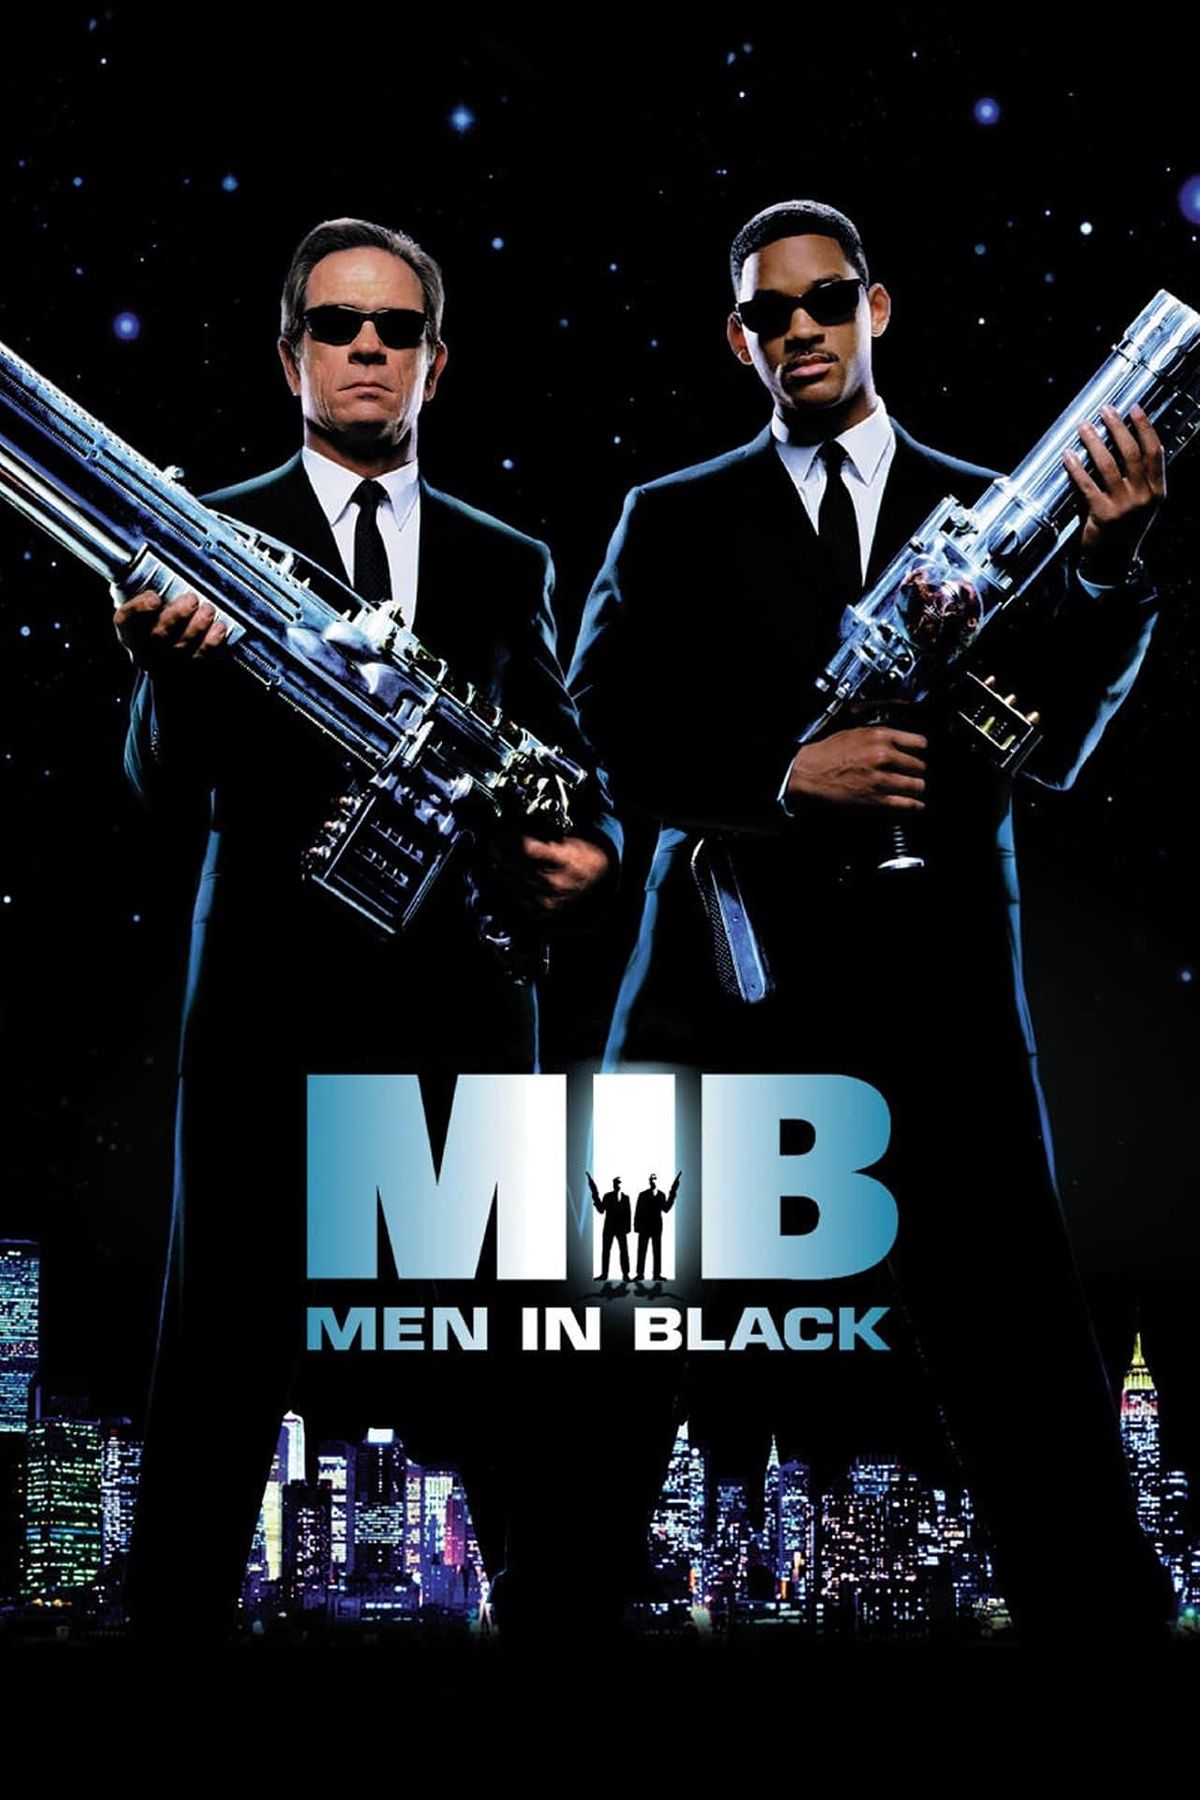 Movie Night at the Garden: Men in Black